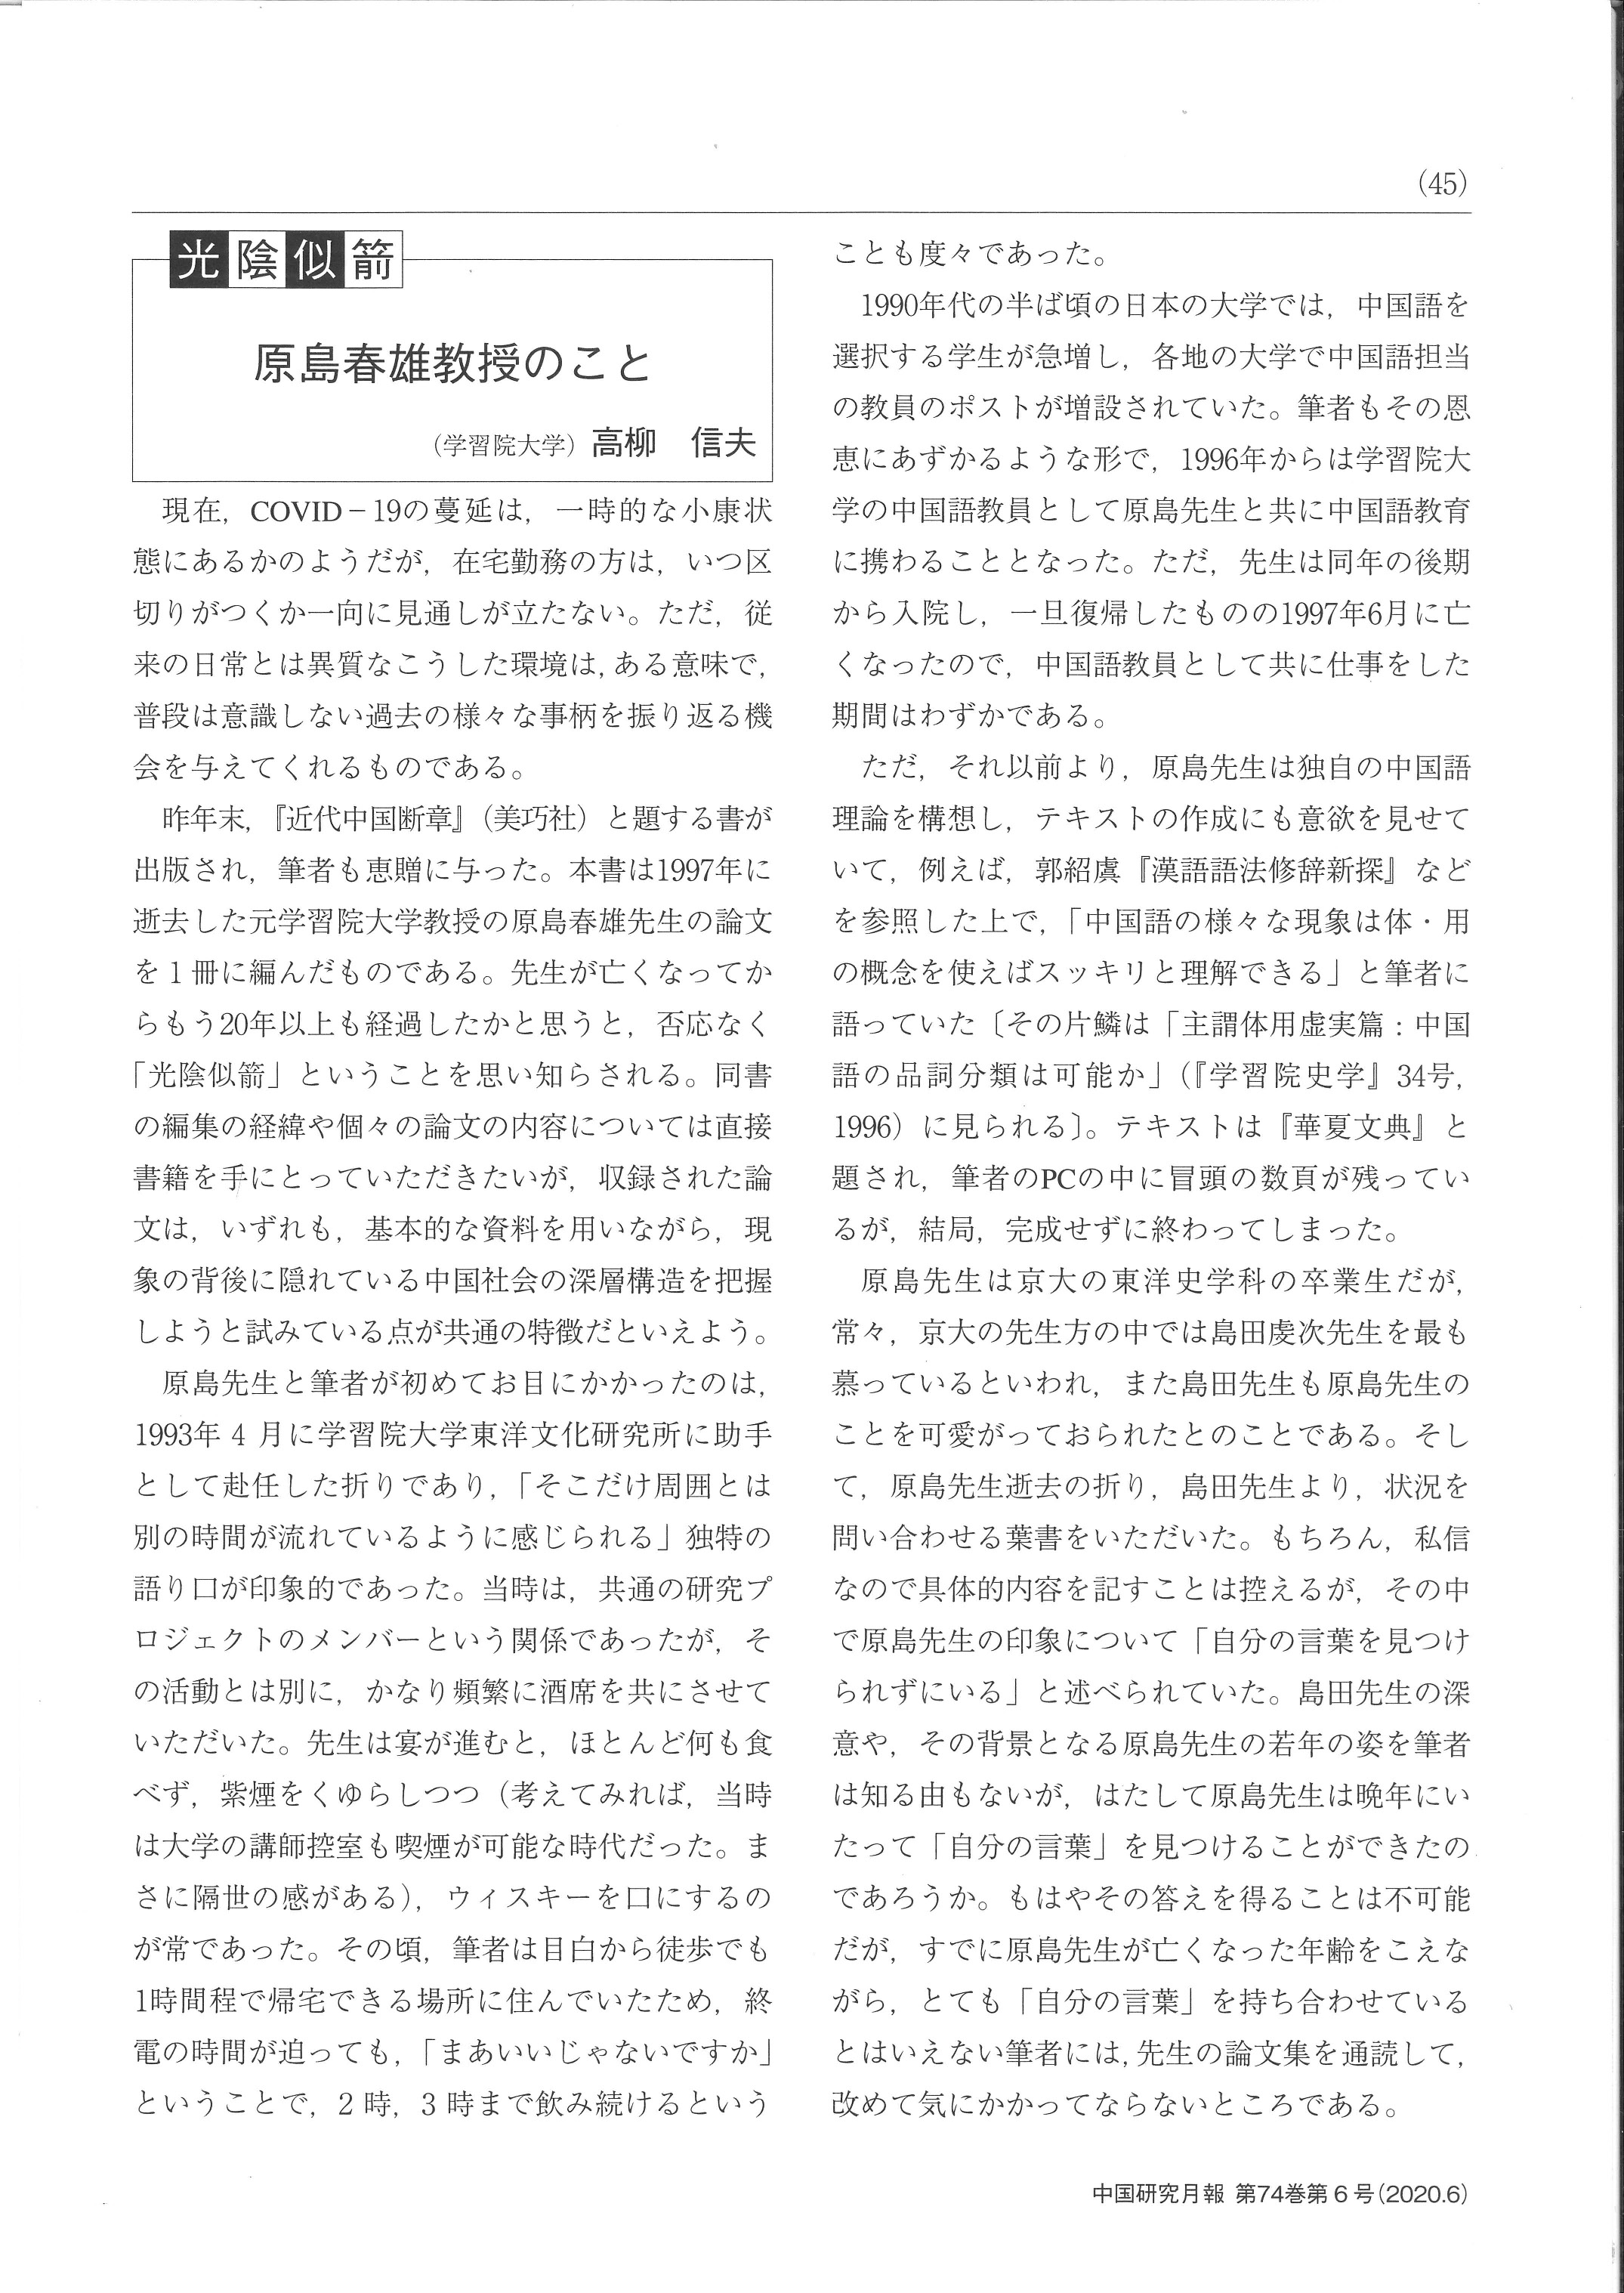 中国研究月報掲載「書評および著者（原島春雄）紹介」